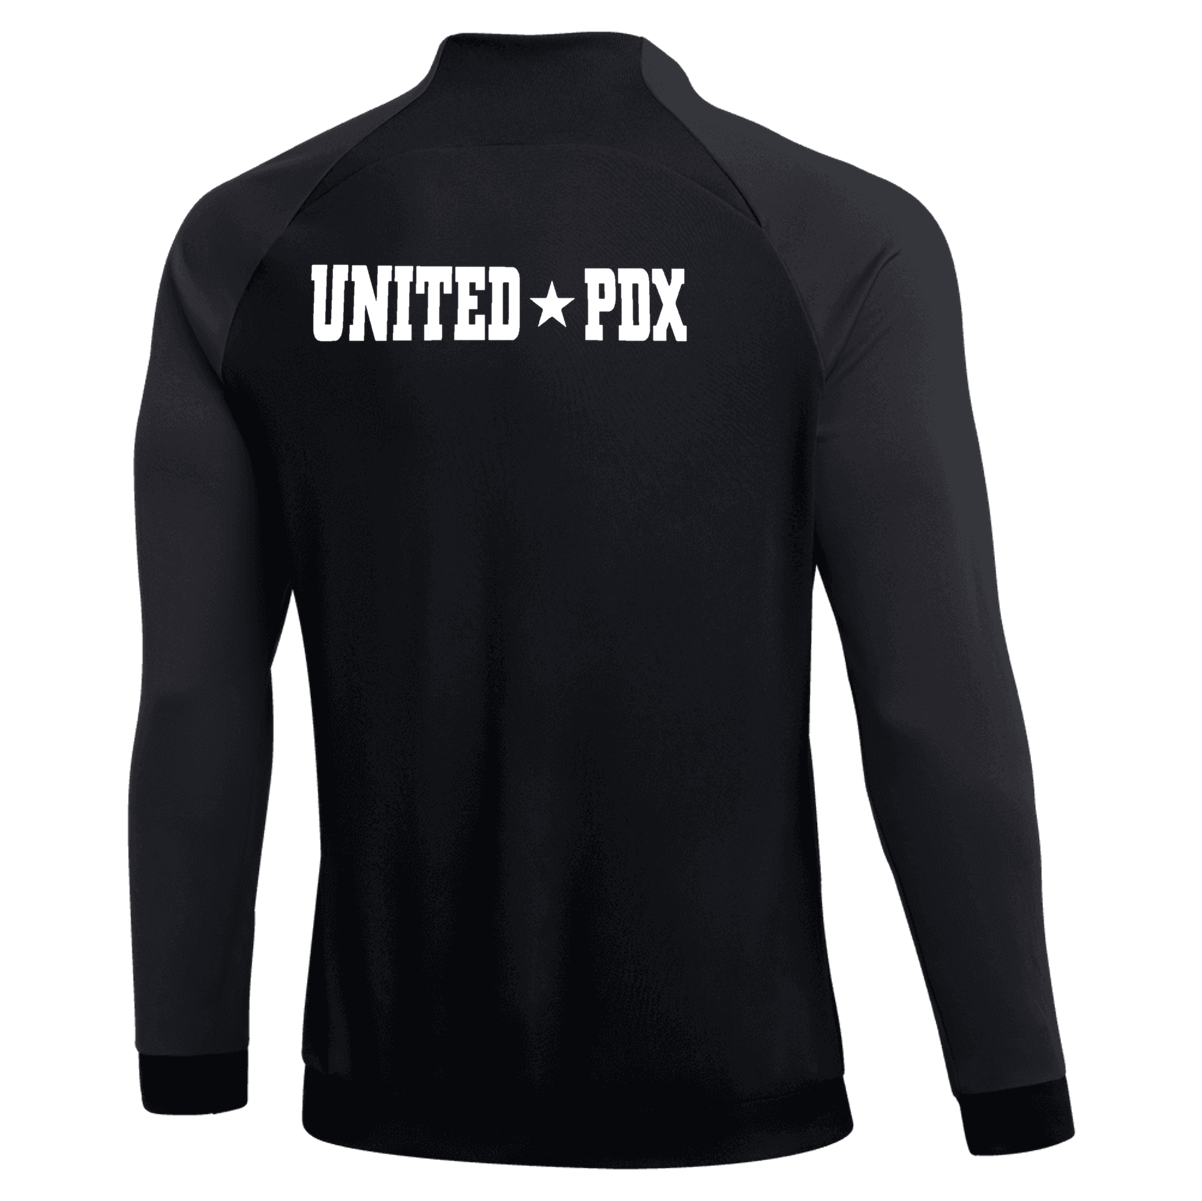 United*PDX '22 Jacket [Youth]